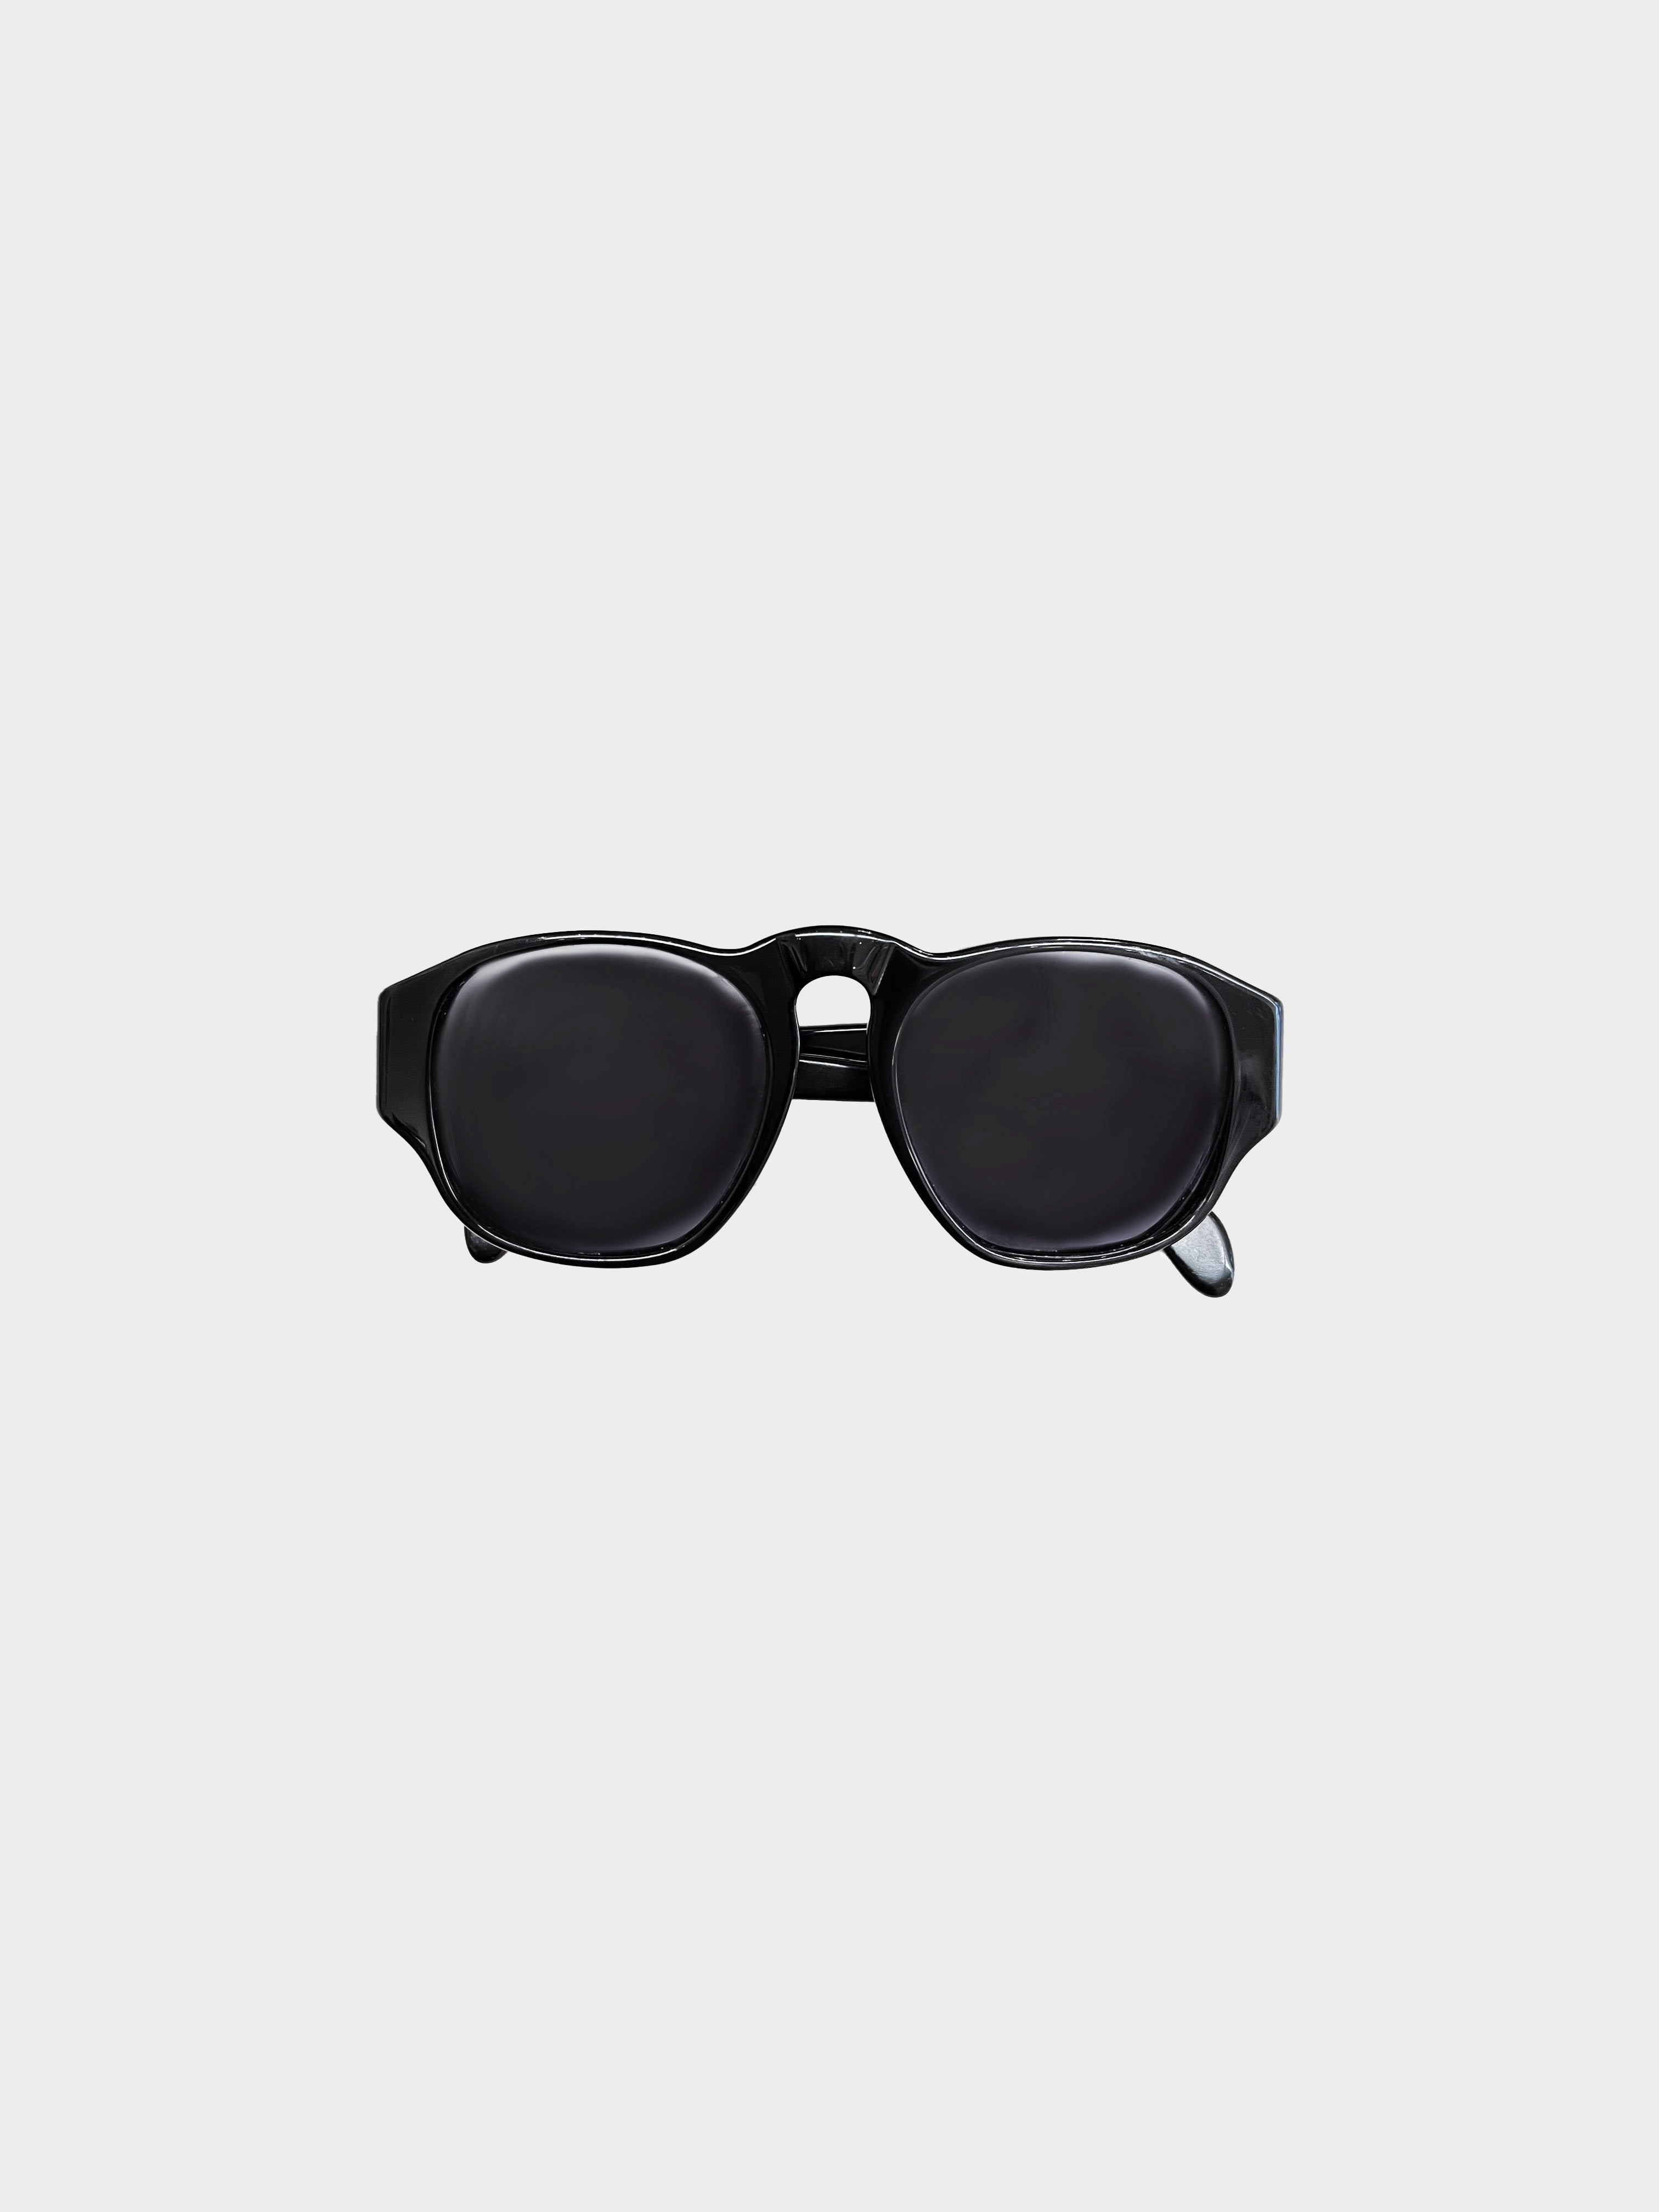 Chanel 1990s Black Retro Sunglasses